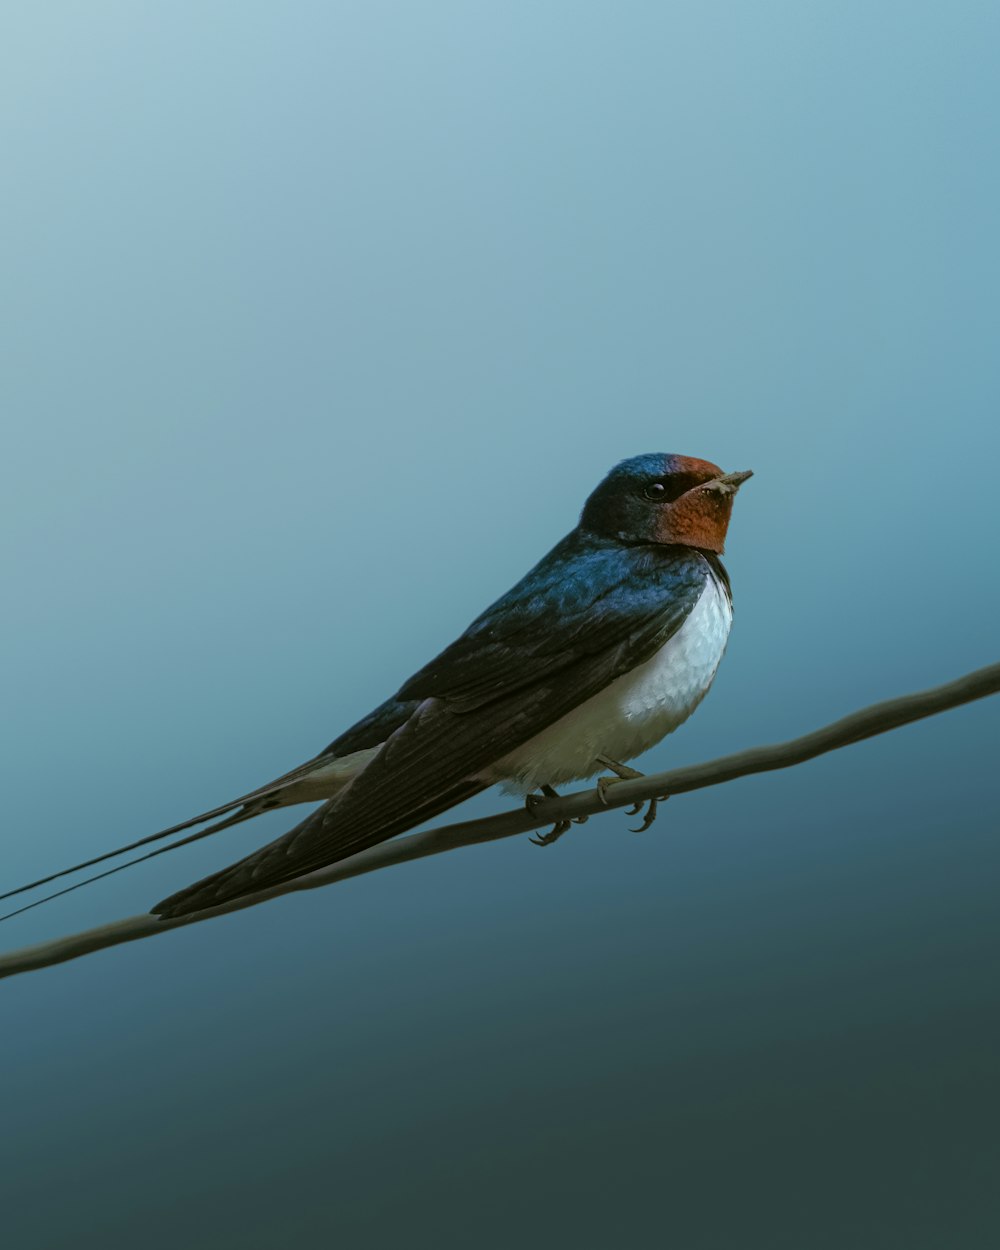 Un oiseau assis sur un fil avec un fond de ciel